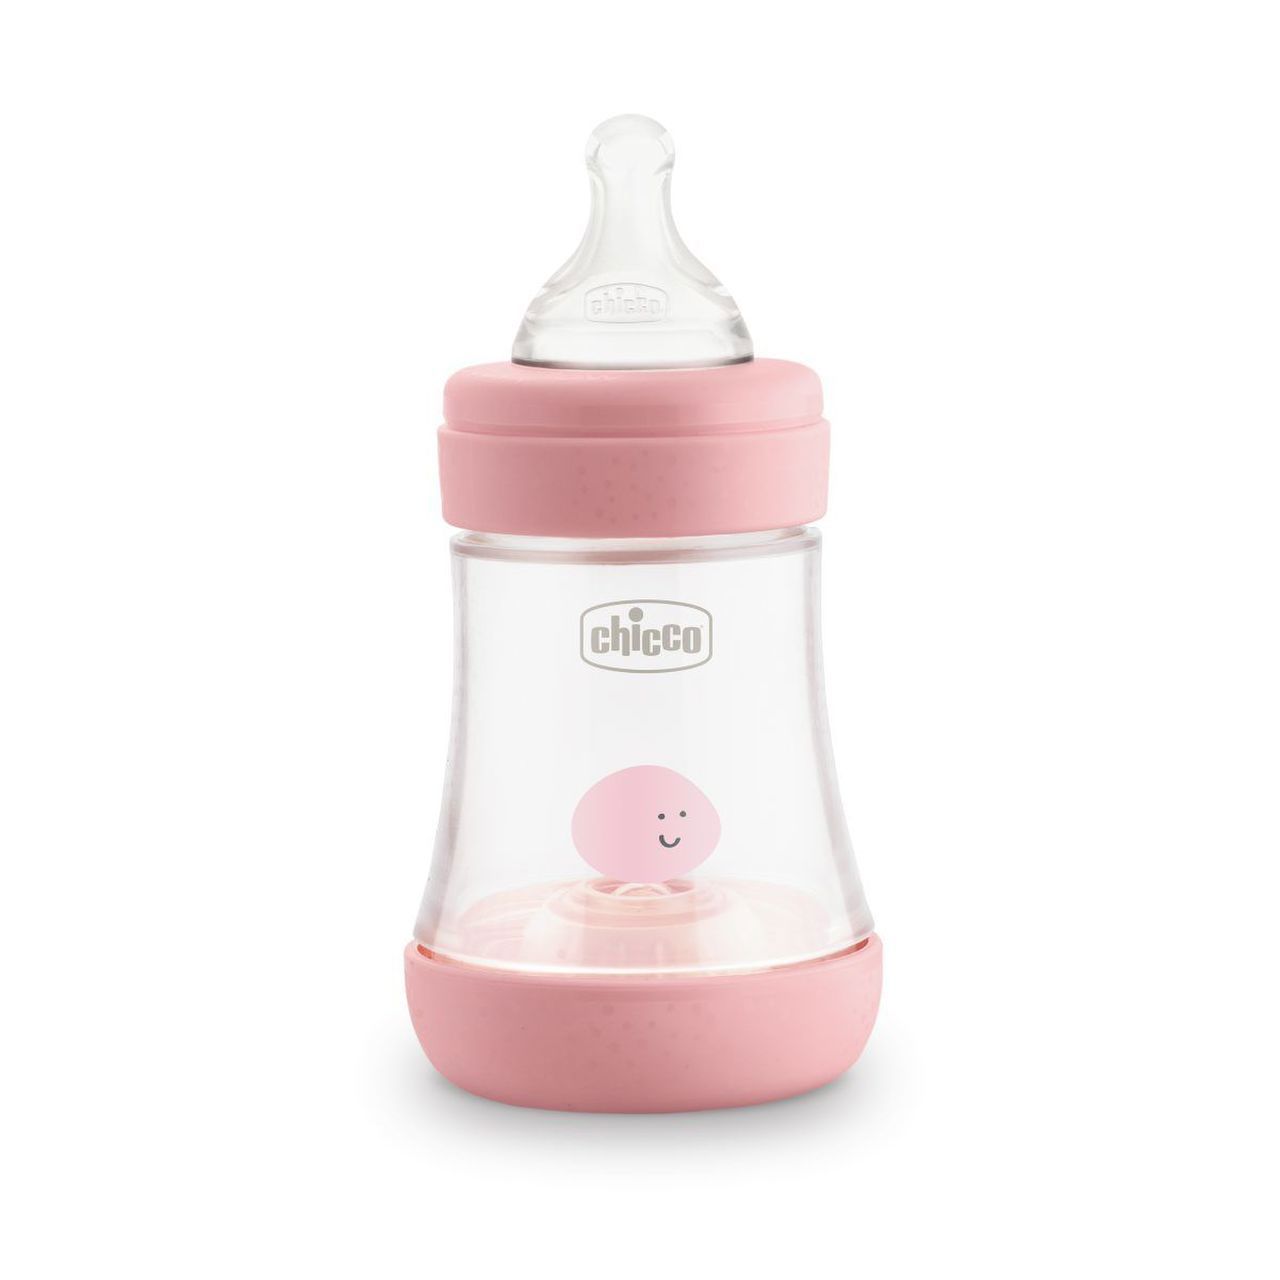 detergente para biberones y utensilios de bebé Chicco